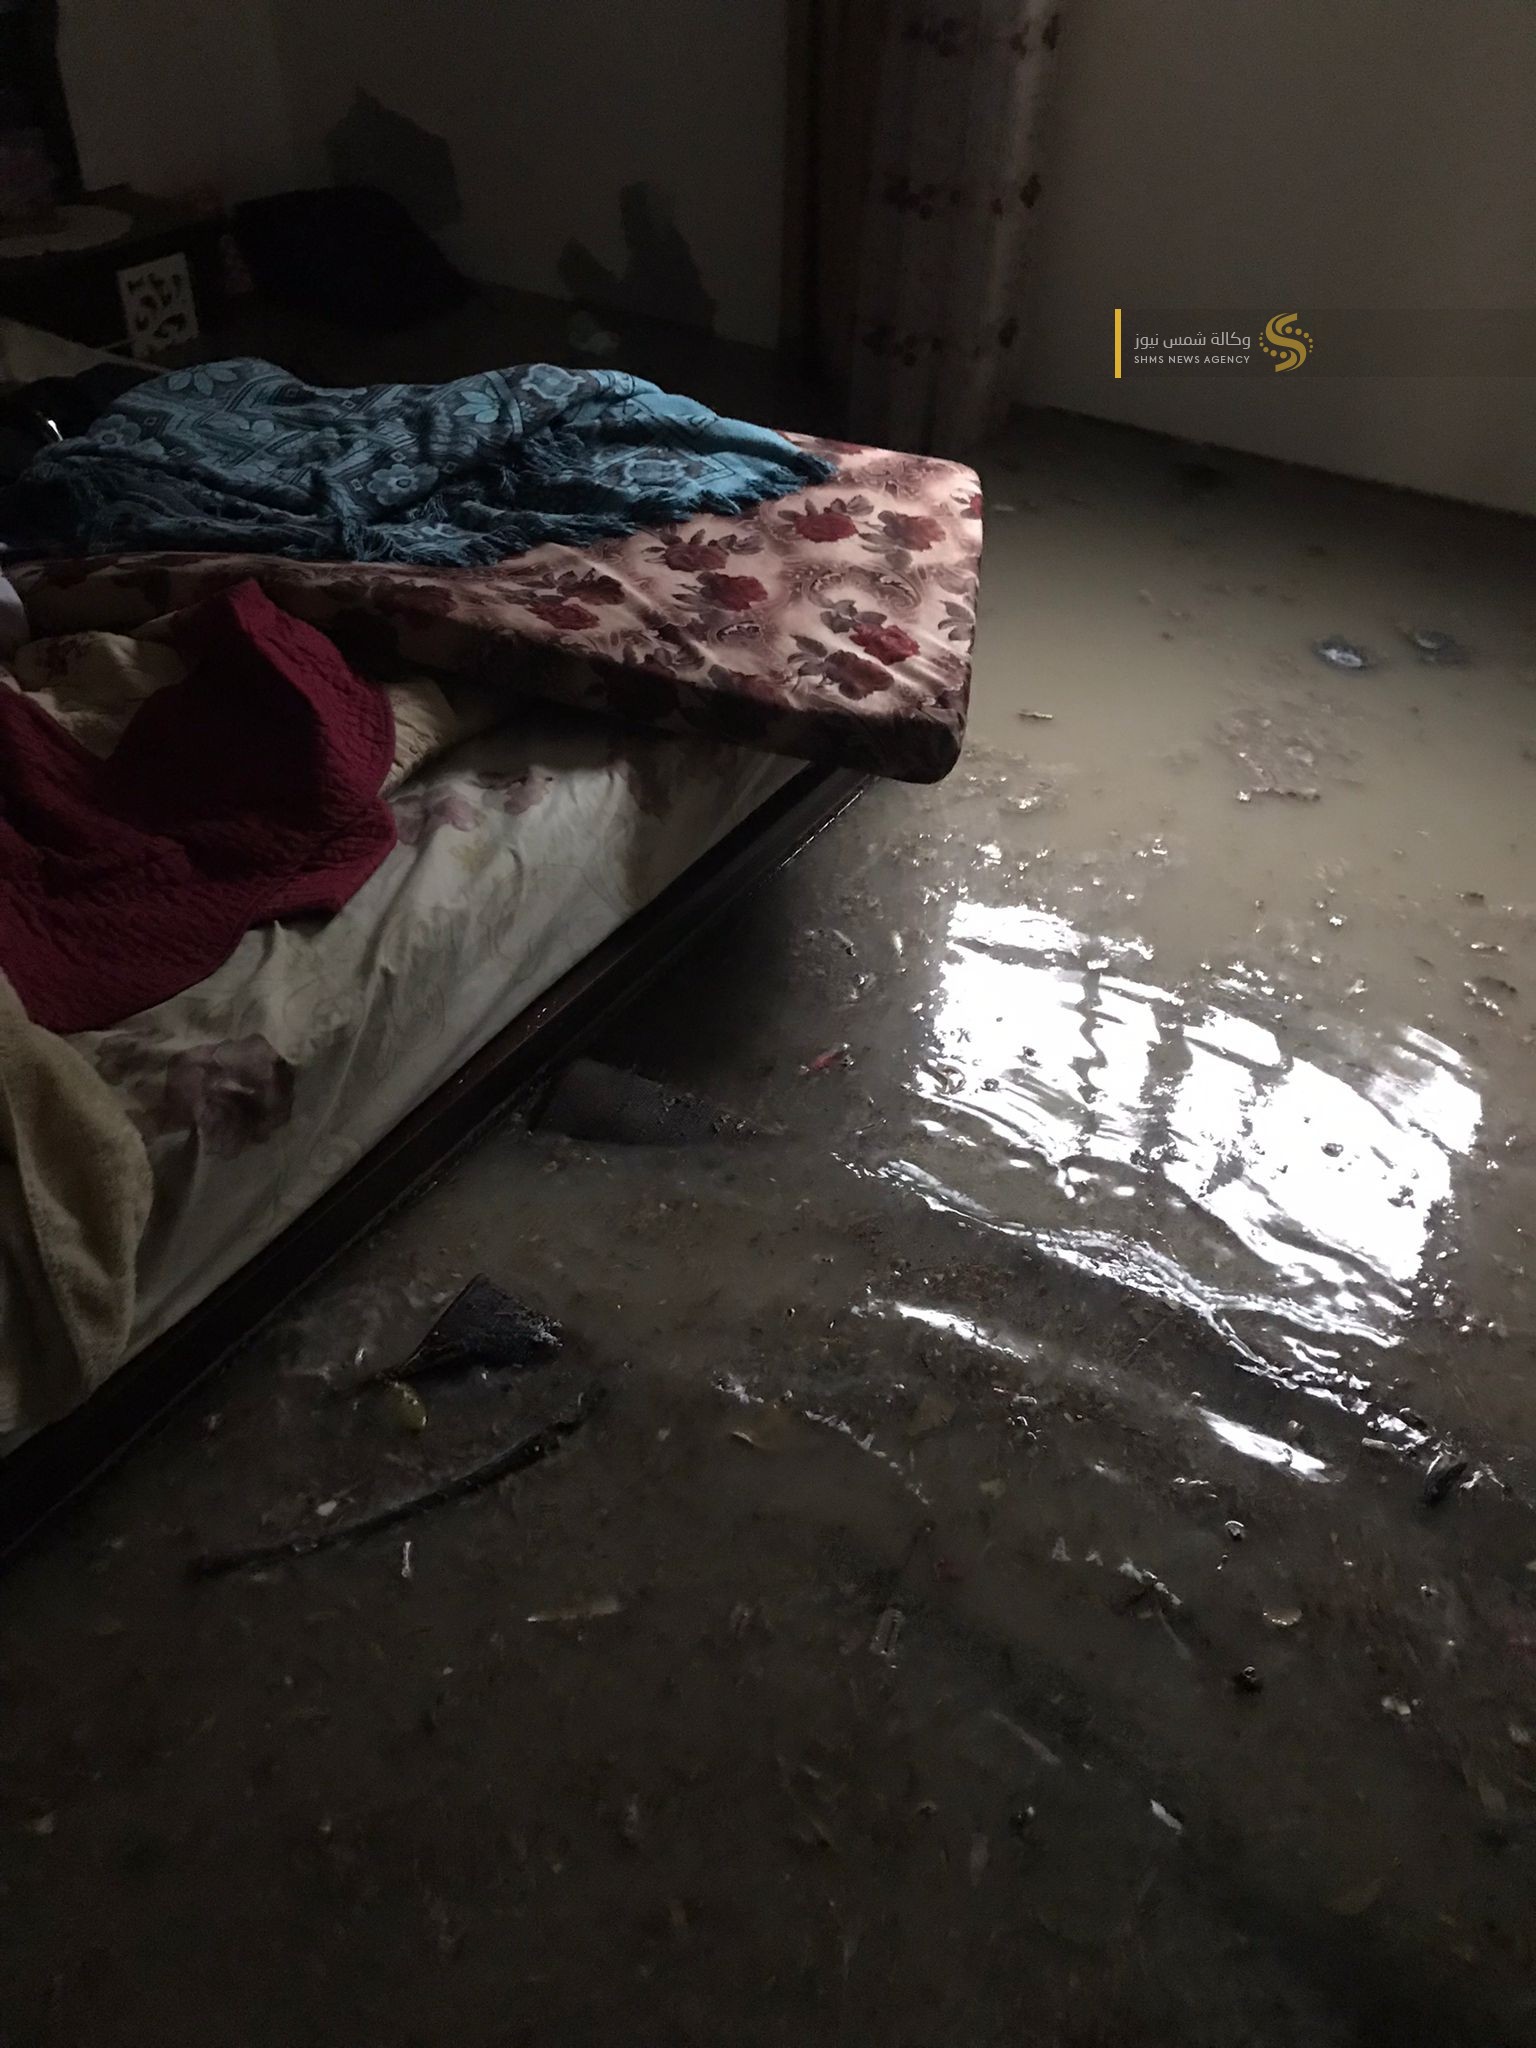 غرق منازل في غزة بمياه الأمطار.jfif